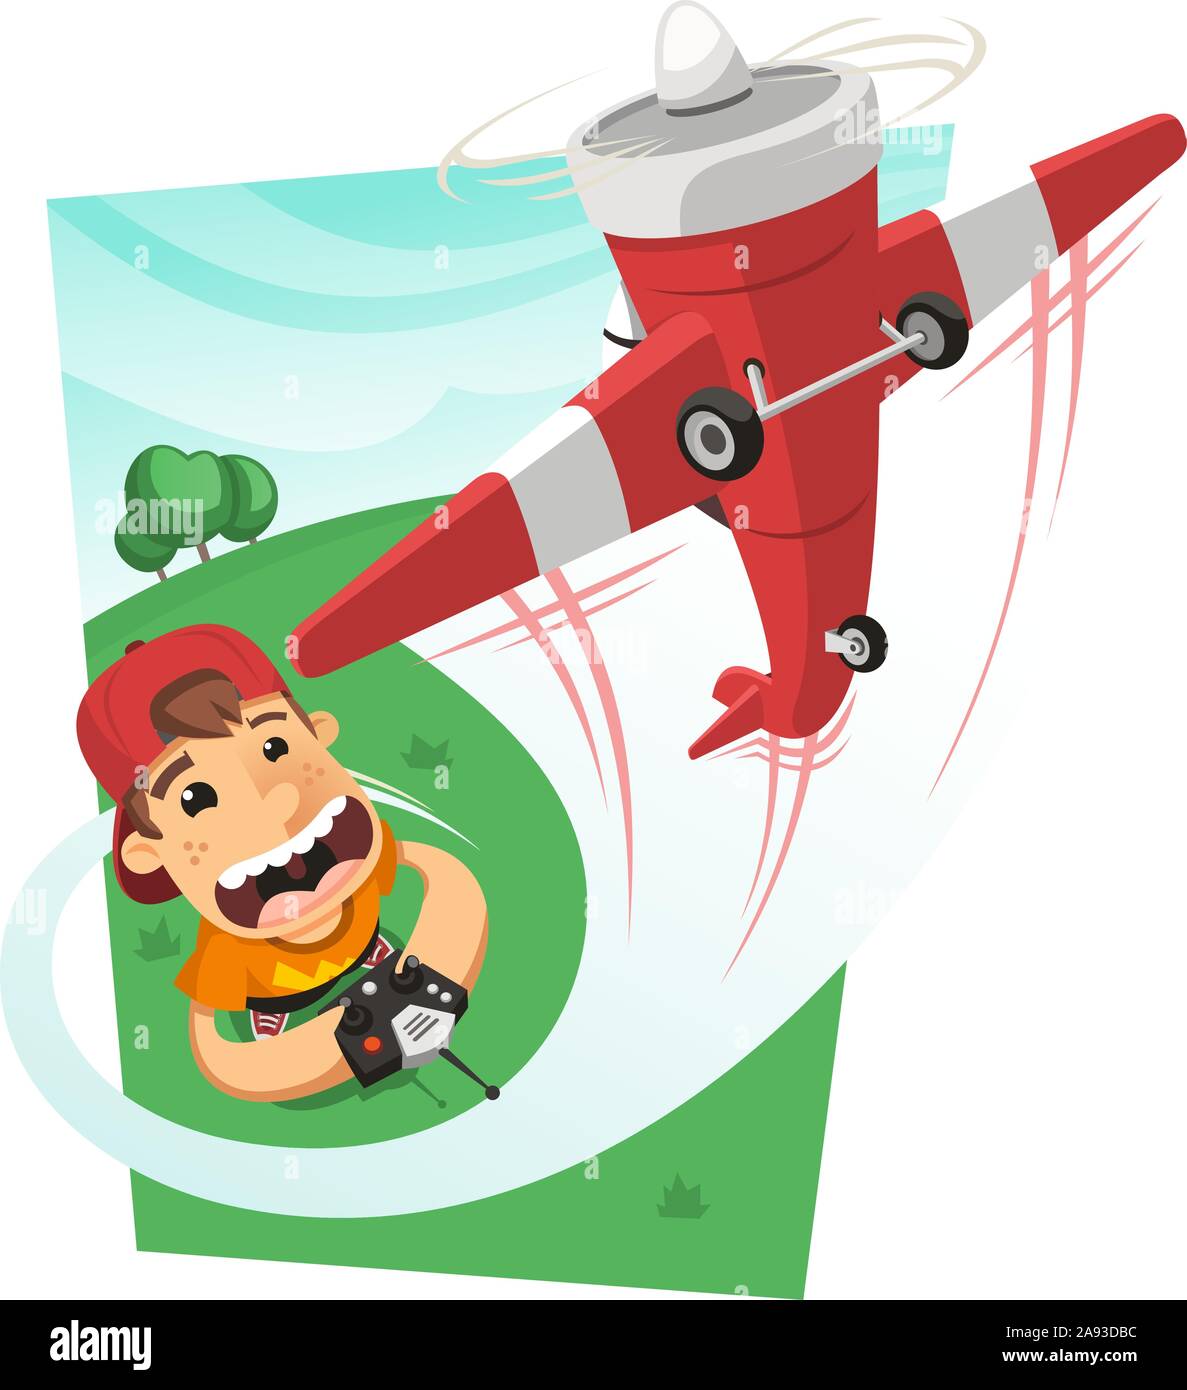 Garçon jouant avec un avion de commande radio dans le parc, vector illustration cartoon. Illustration de Vecteur